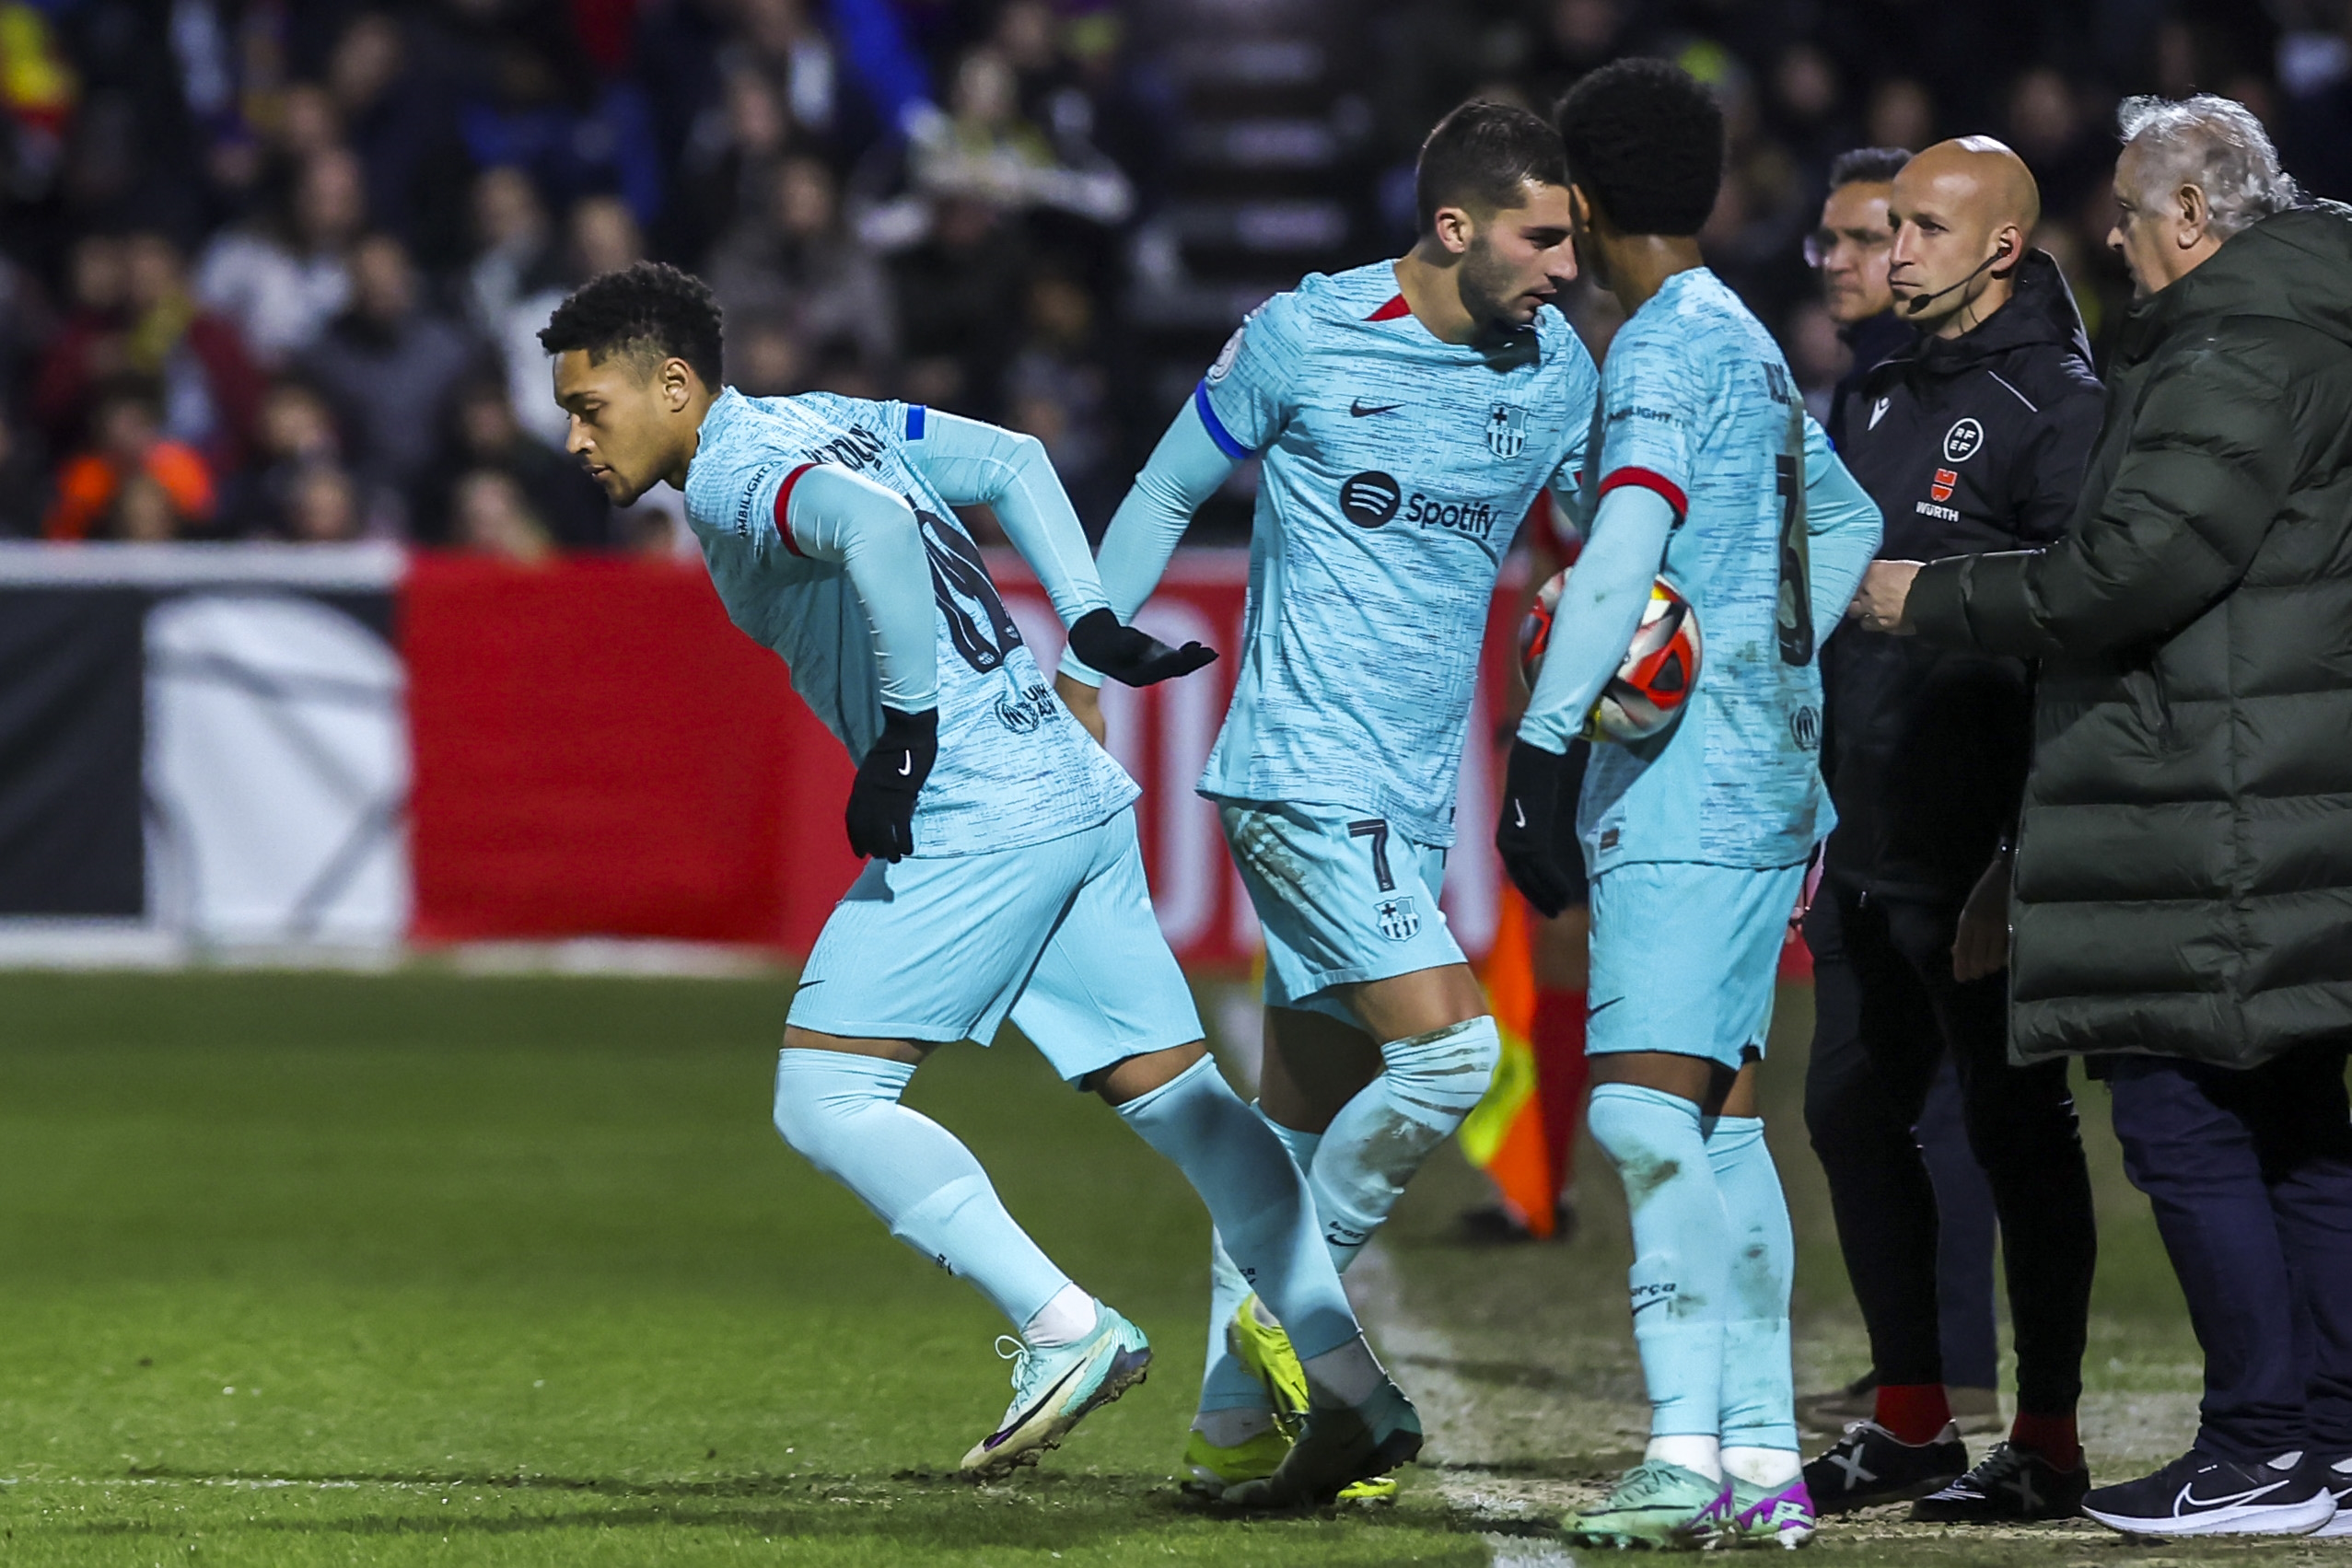 Vitor Roque despierta indiferencia (y hasta cierta preocupación) en el vestuario del Barça